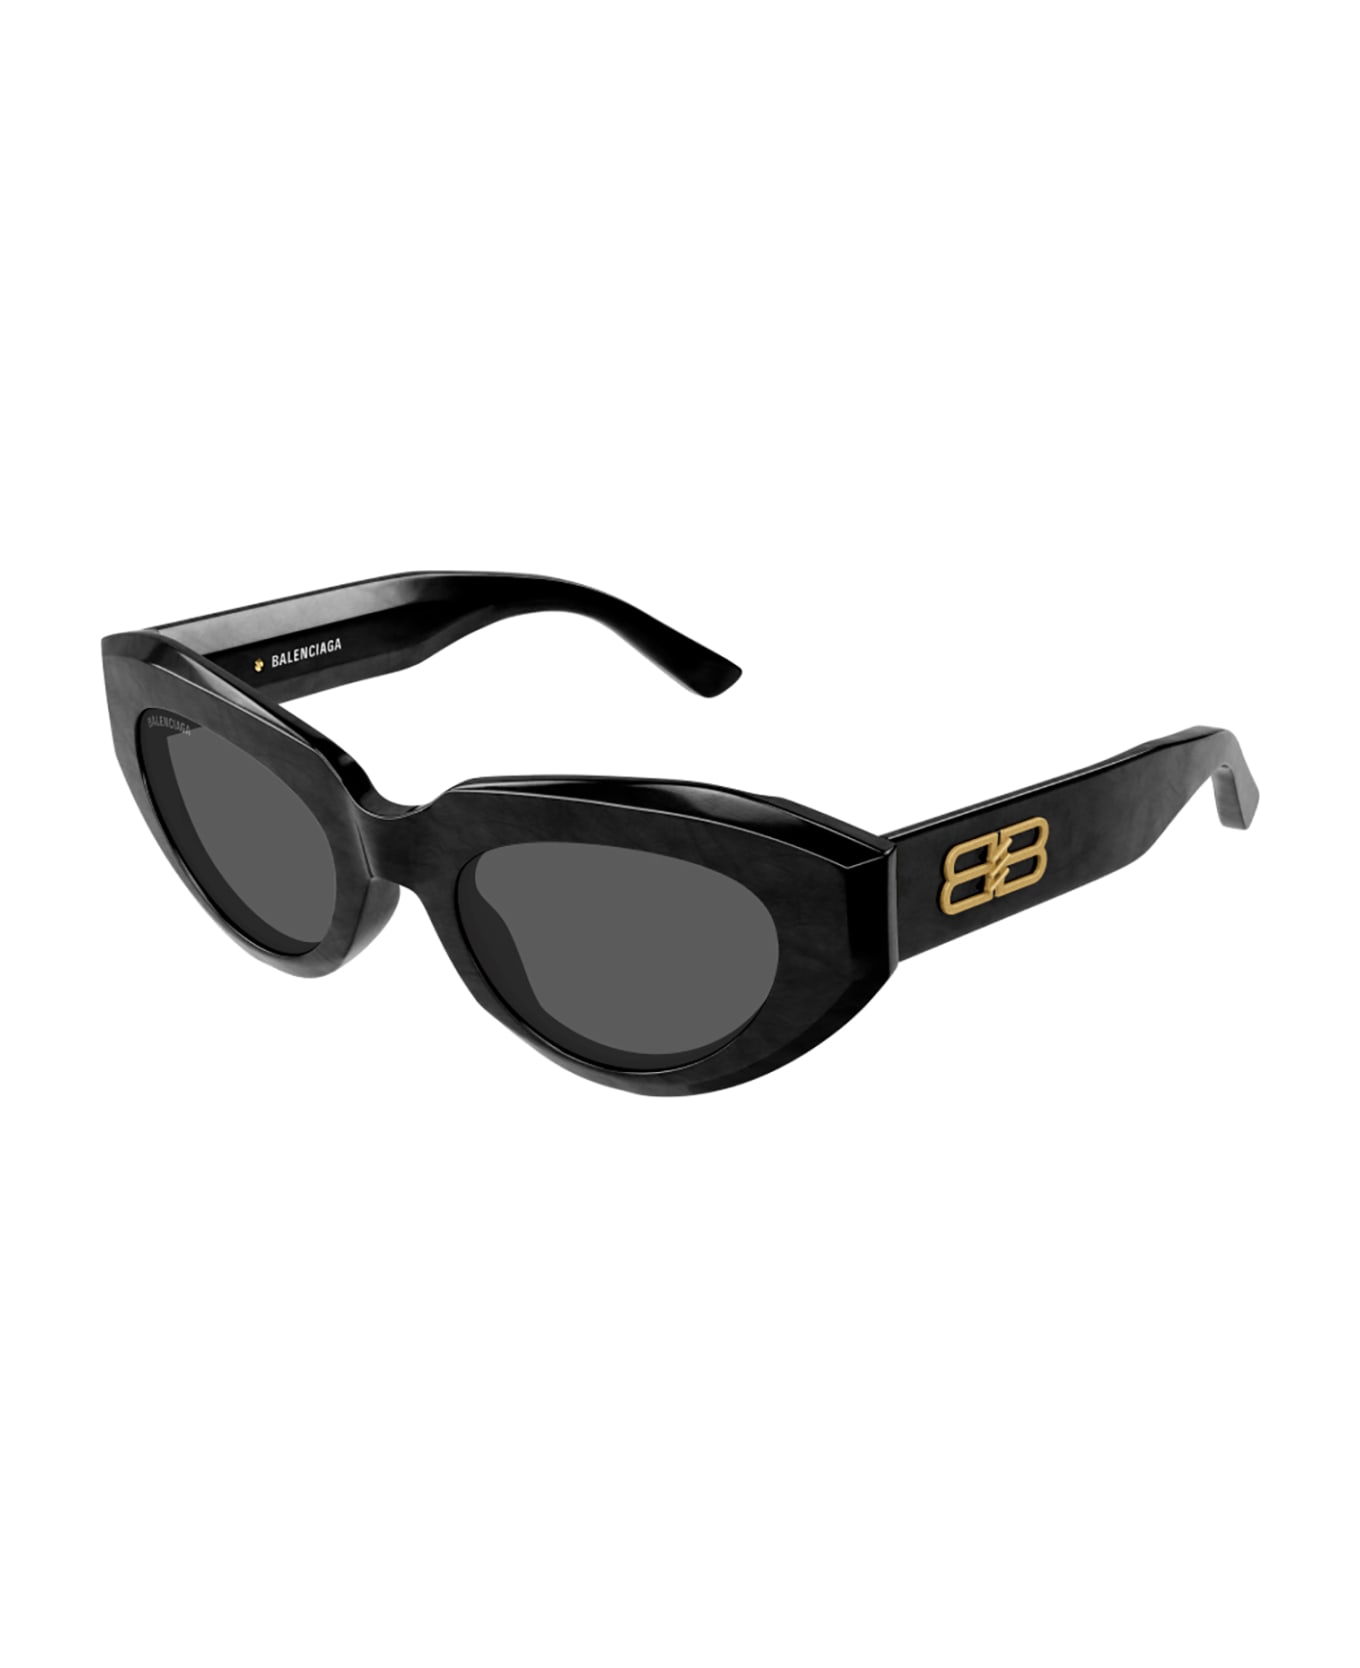 Balenciaga Eyewear 1e5x4id0a - Black Black Grey